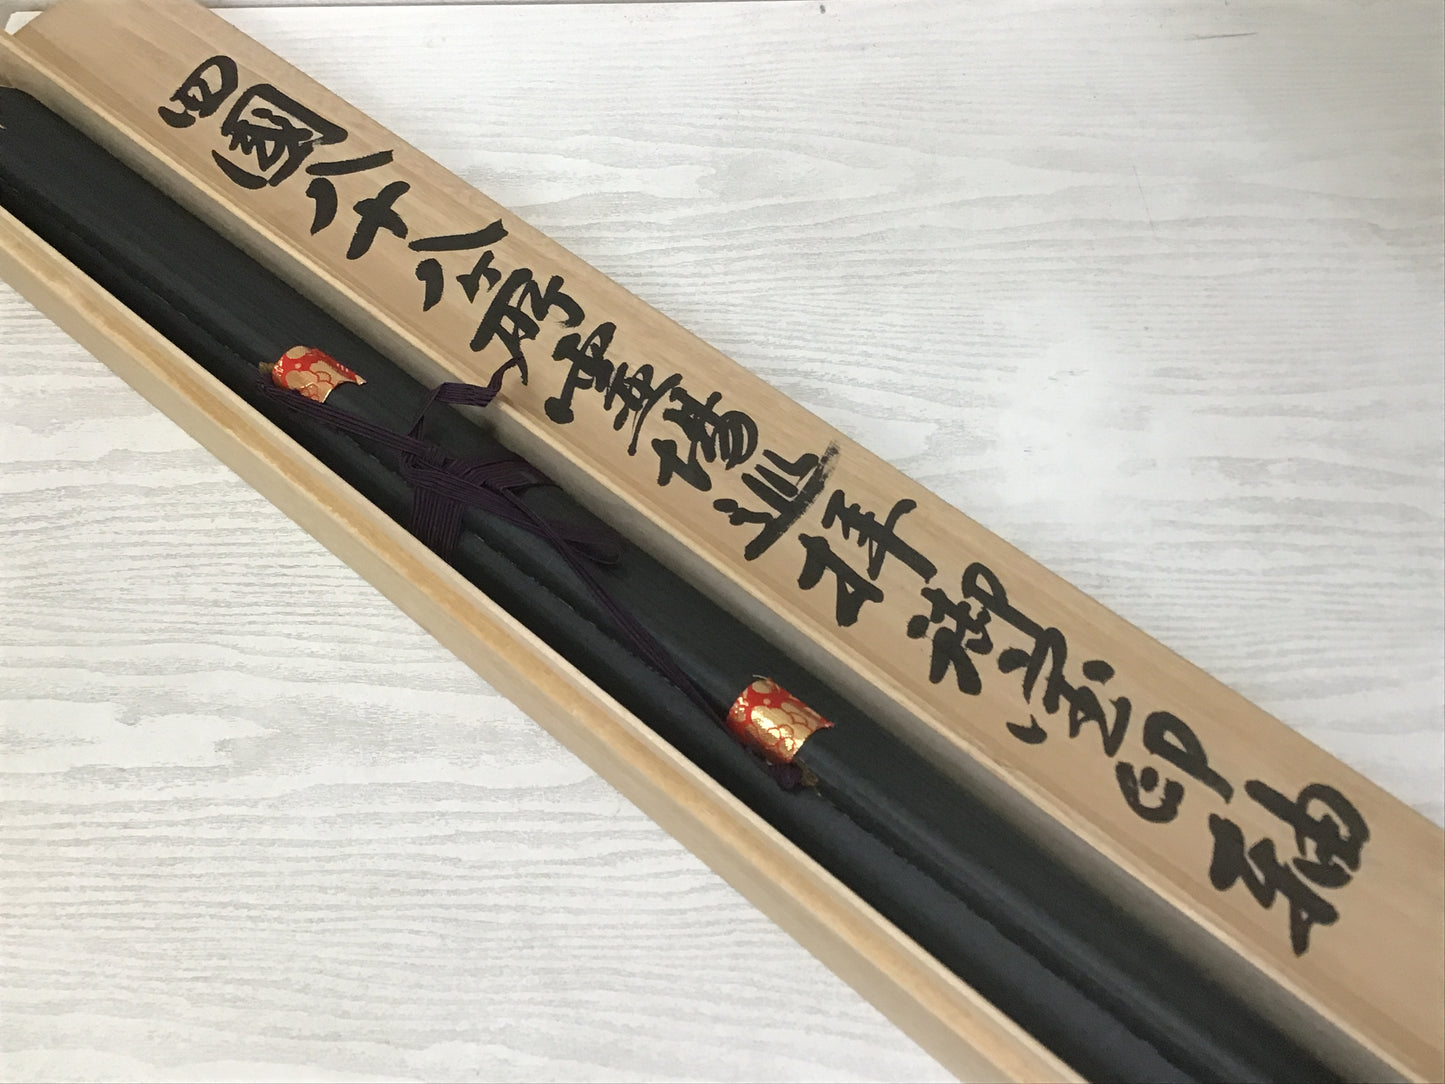 Y1351 KAKEJIKU Calligraphy Red Seal box 188x73cm Japanese hanging scroll